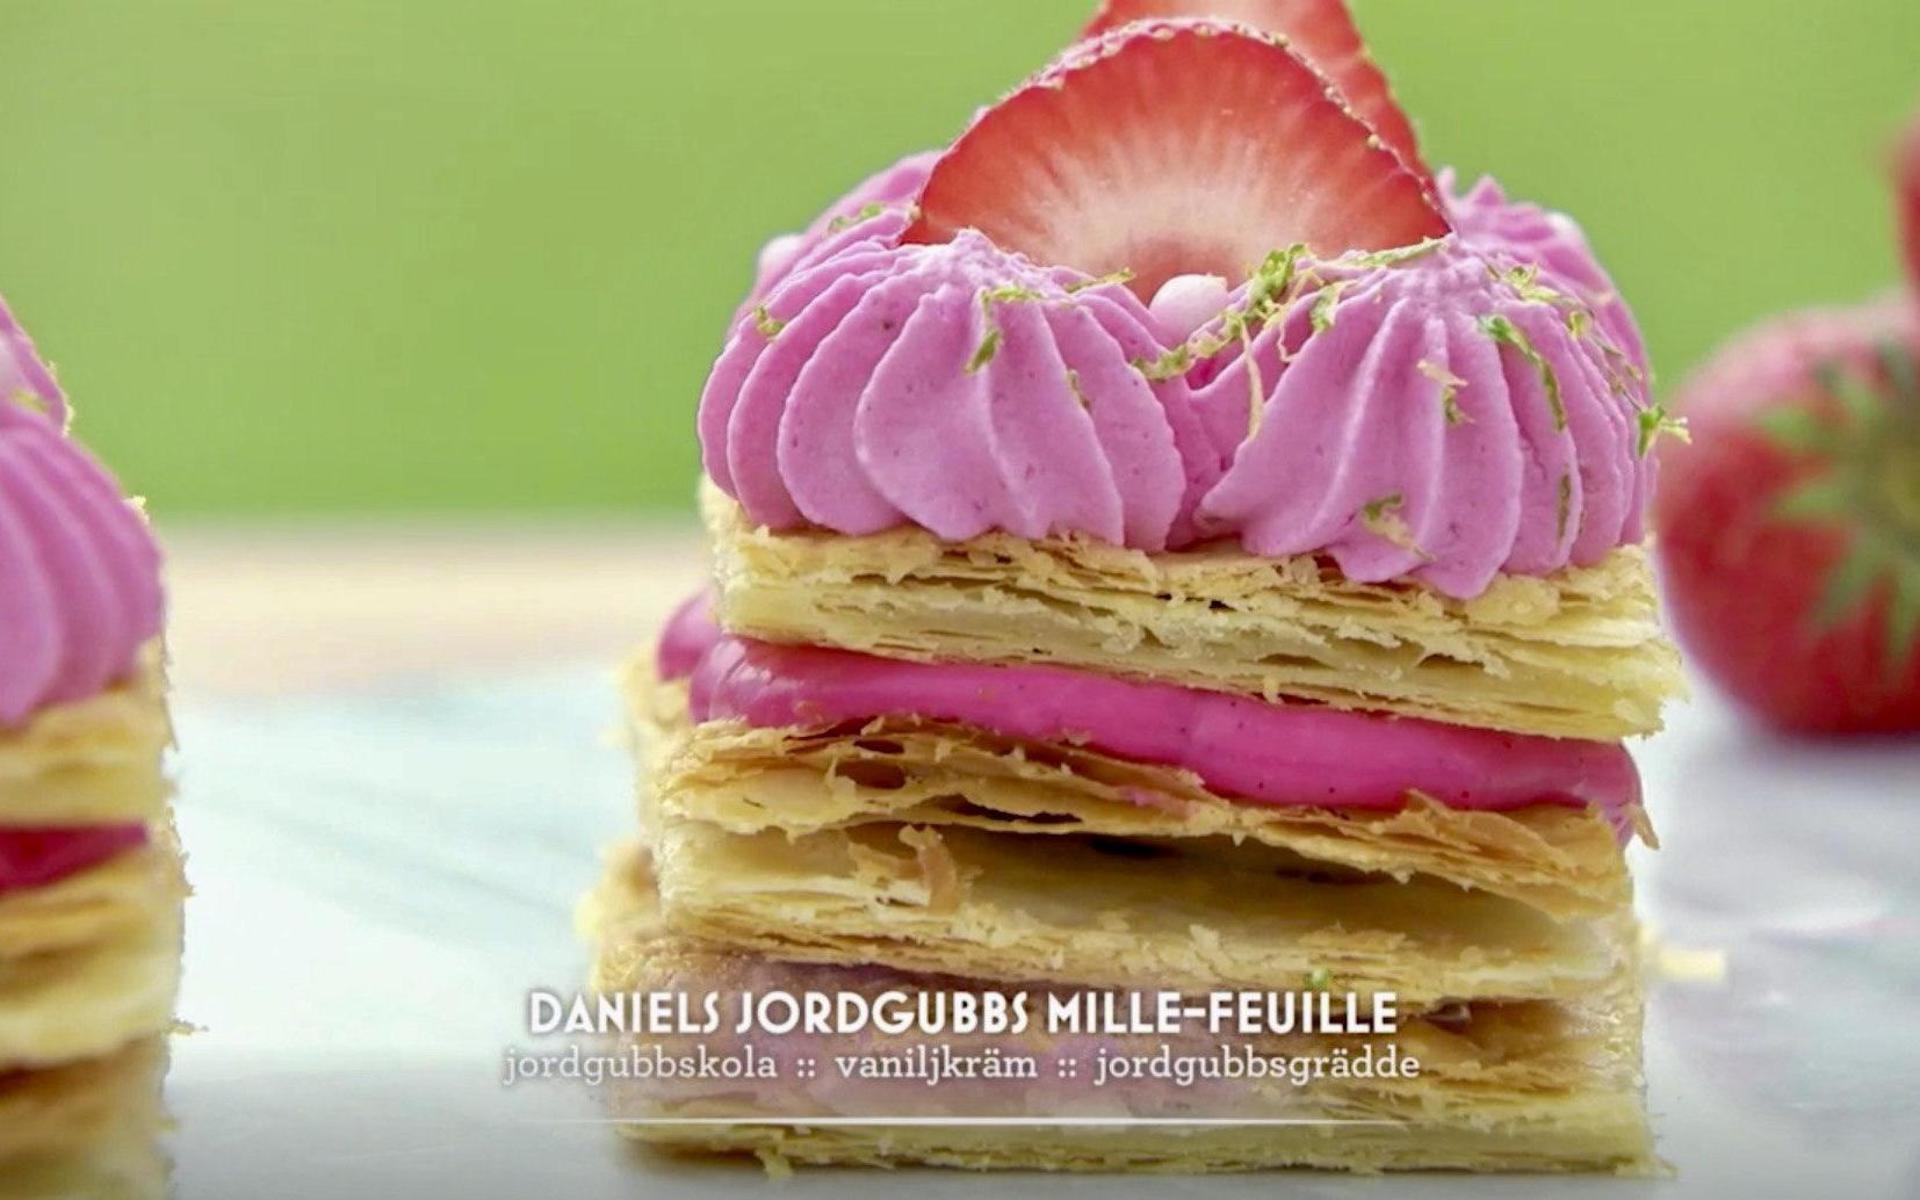 Daniel Pettersson gjorde mille-feuille av smördeg, med fyllning med jordgubbskola och vaniljkräm, toppat med jordgubbar och jordgubbsgrädde.